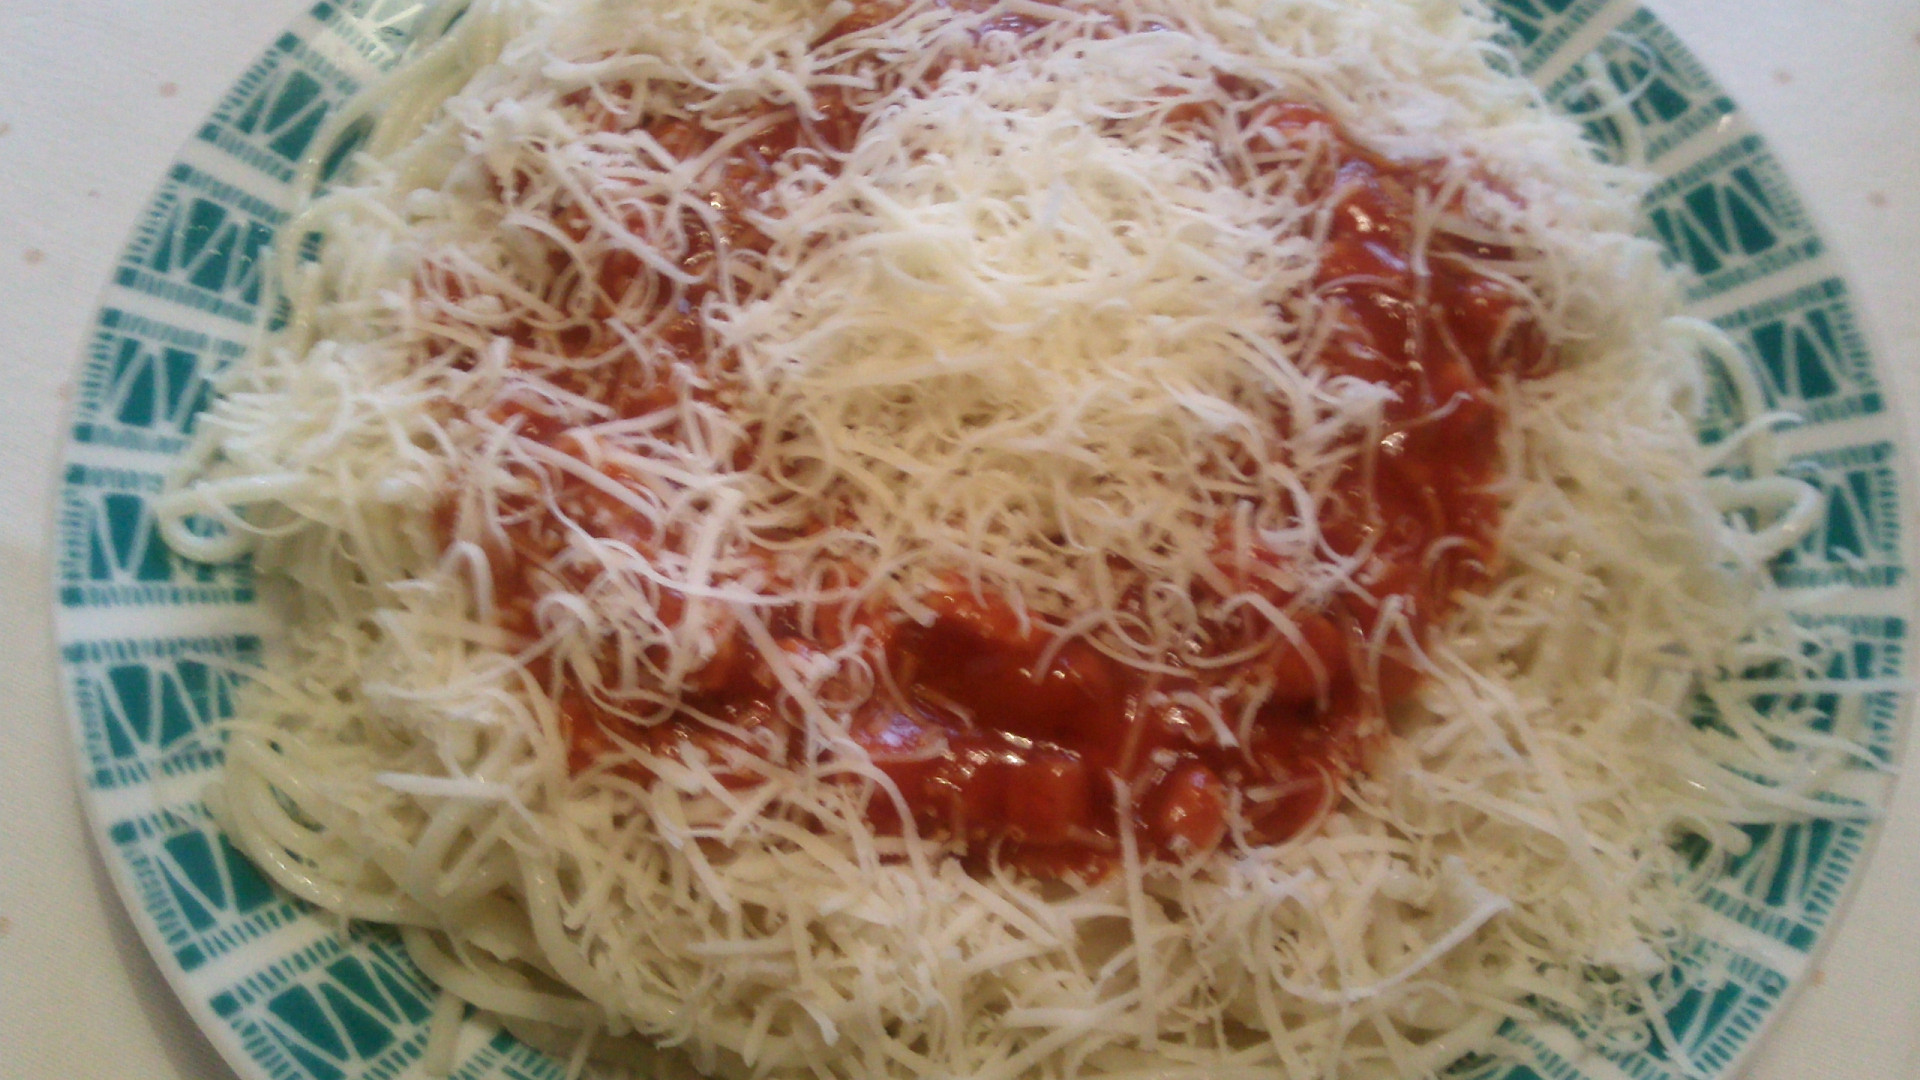 Špagety s jakoby boloňskou omáčkou